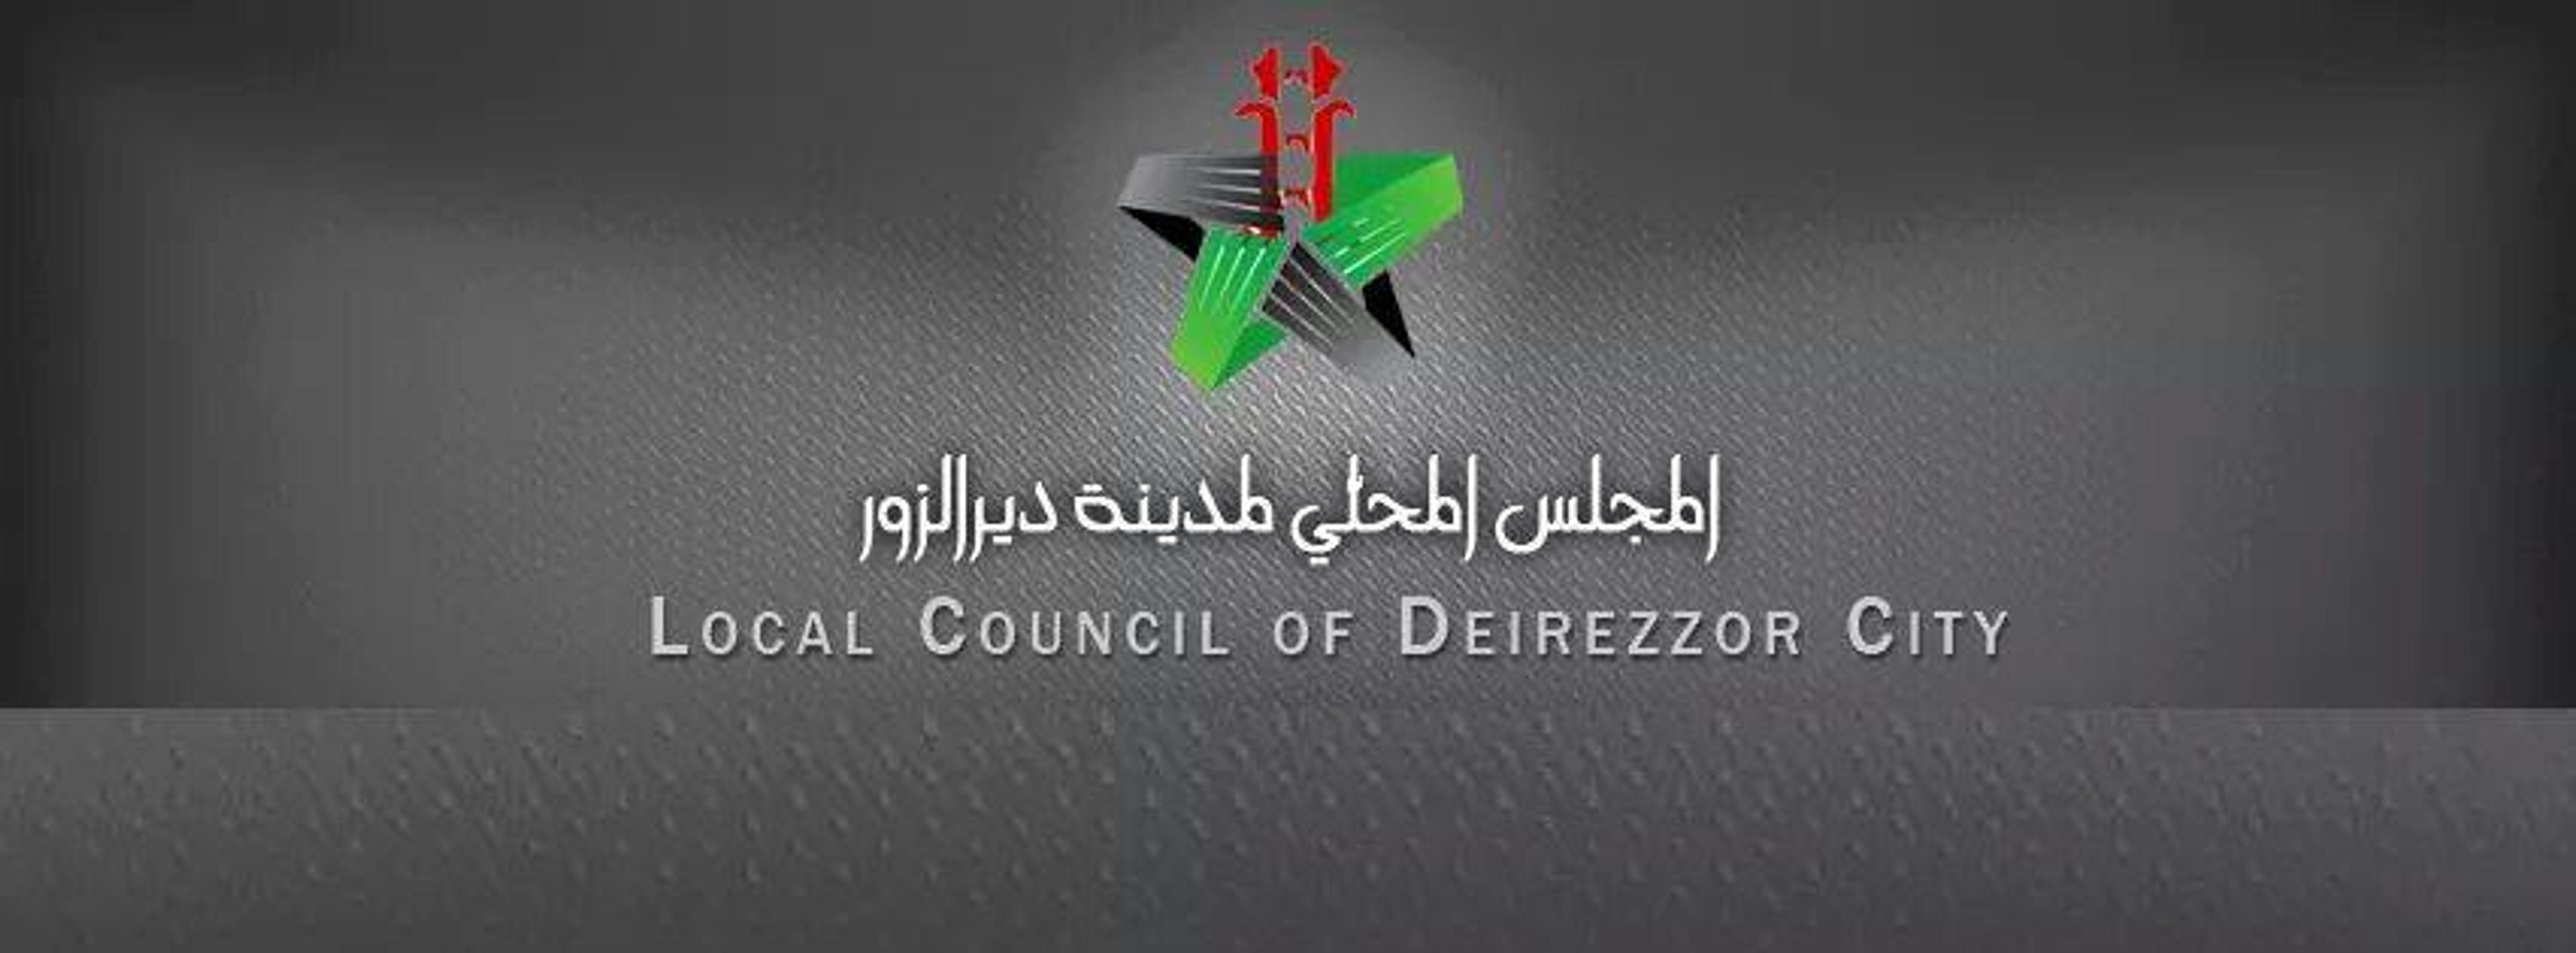 Les militants de DeirEzzor créent le conseil local de DeirEzzor